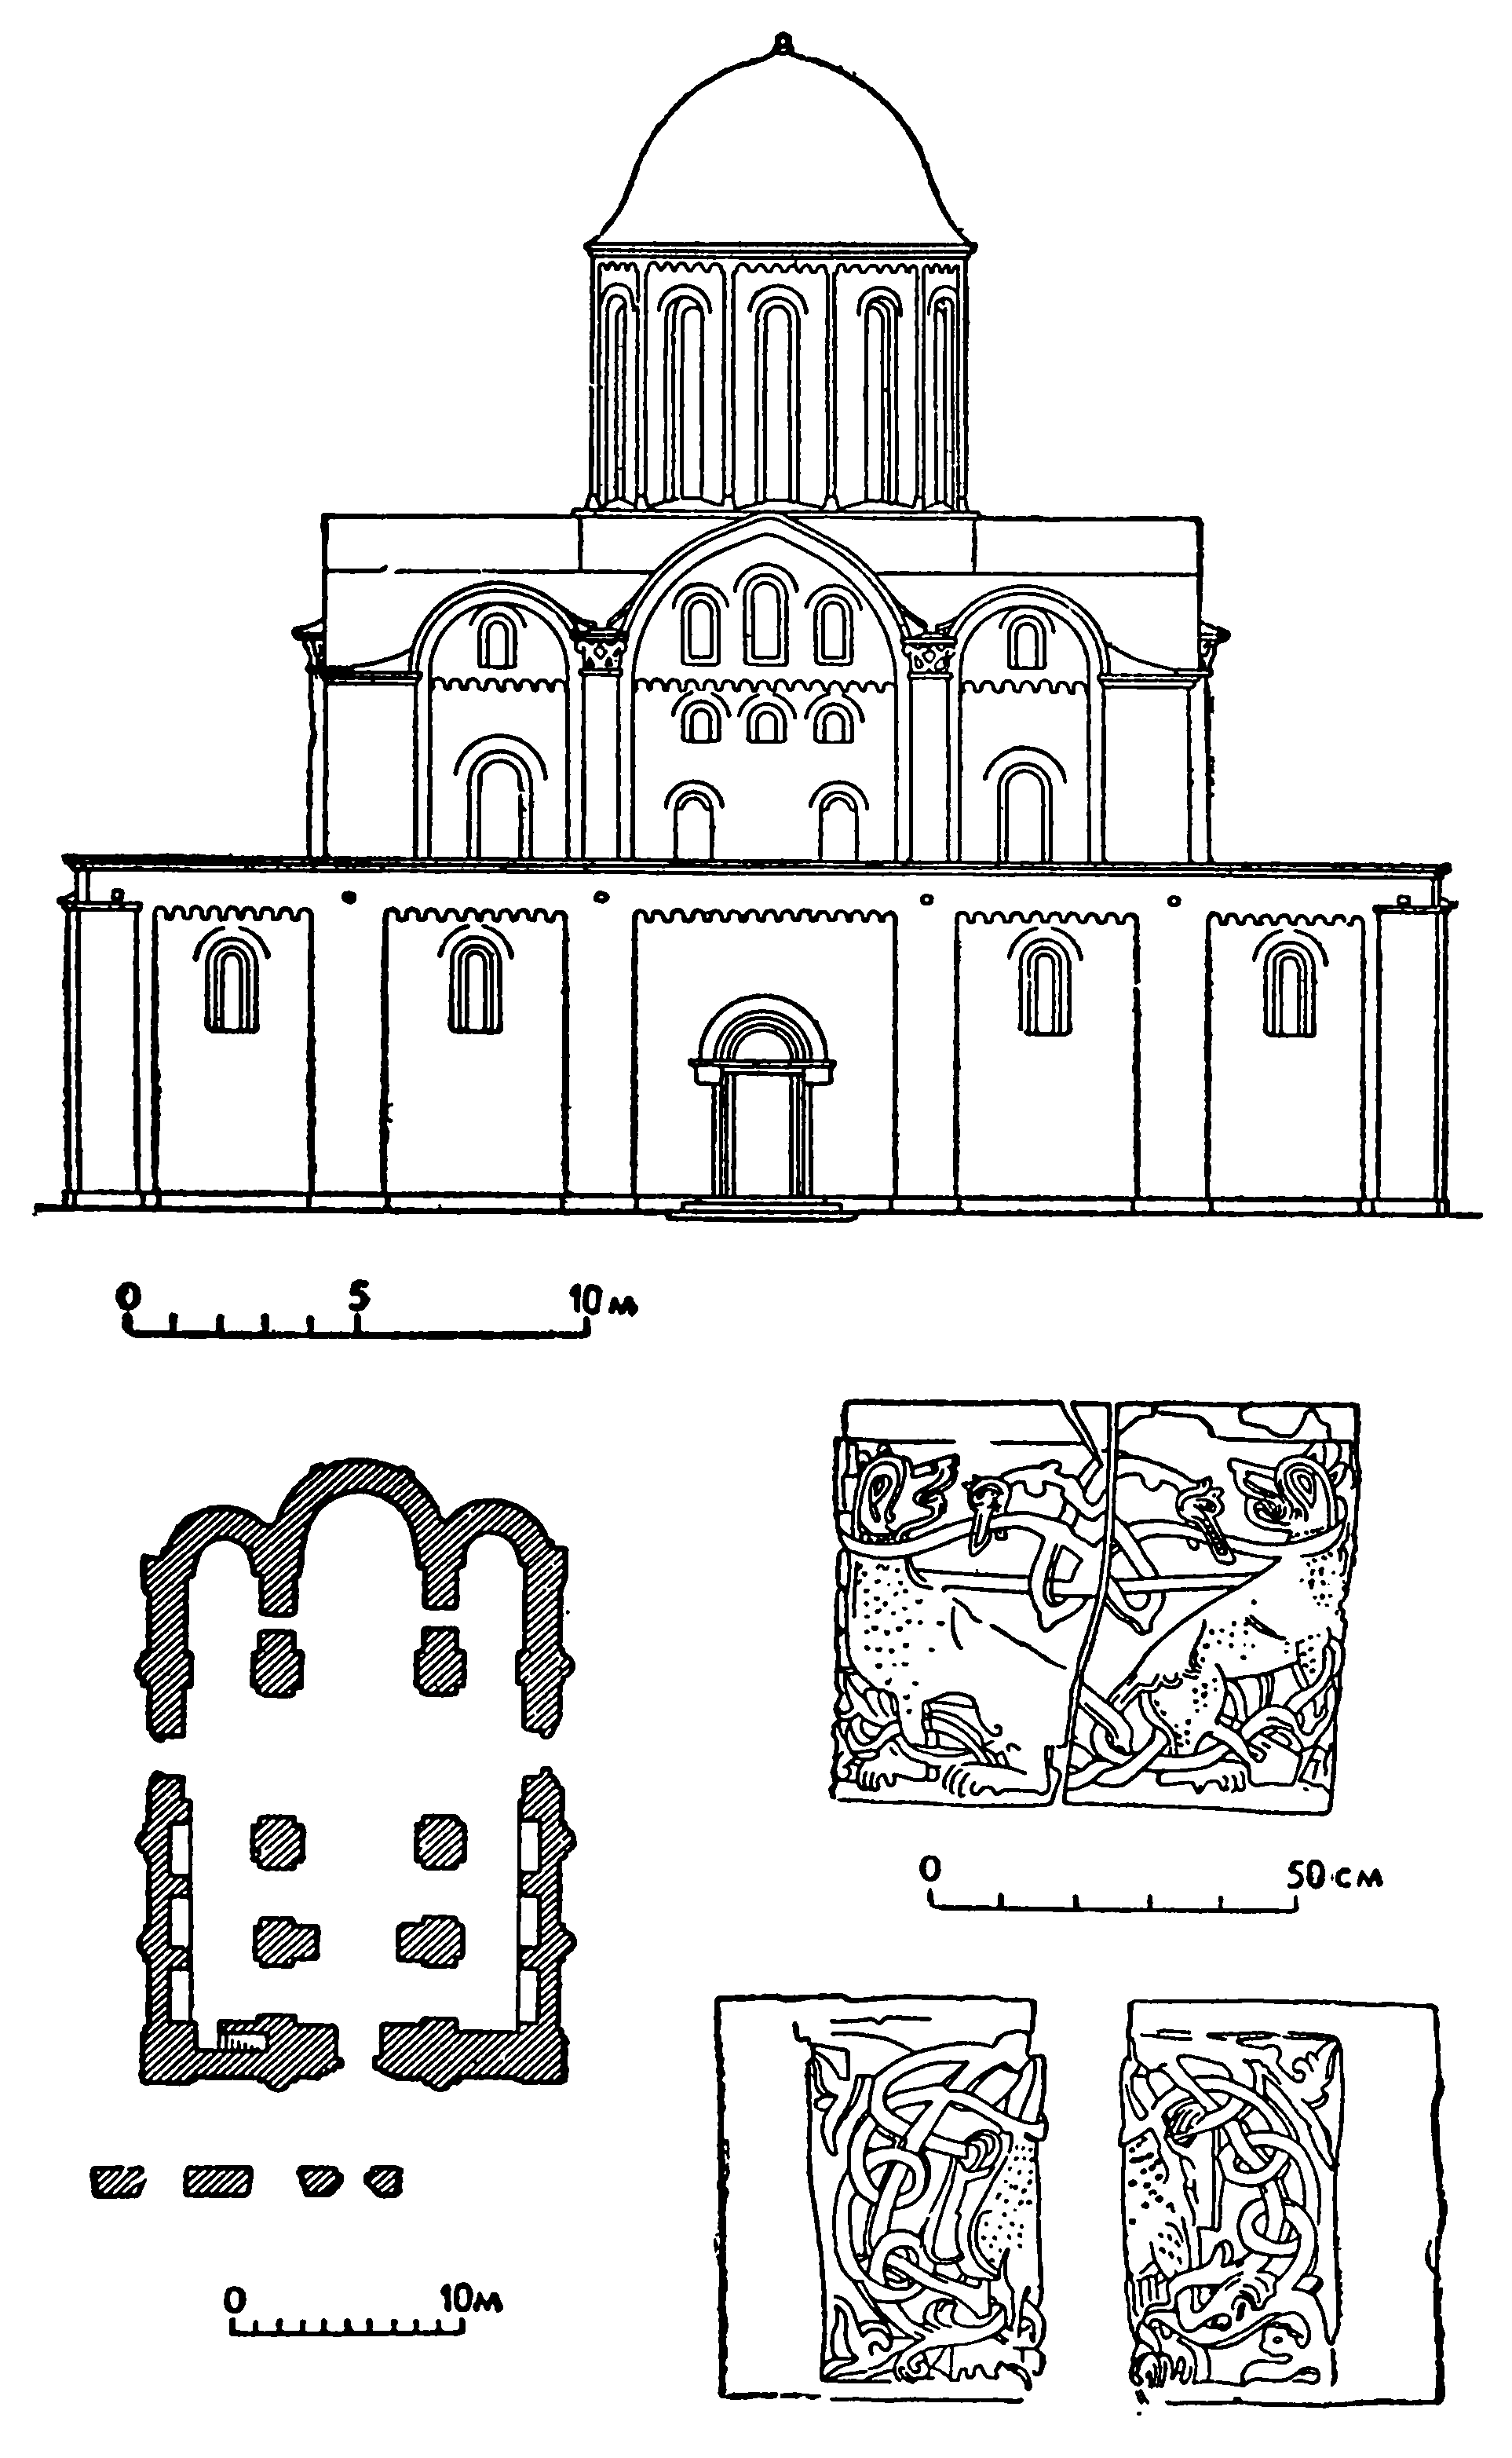 7. Чернигов. Борисоглебский собор, XII в. (западный фасад, план, капитель из раскопок)